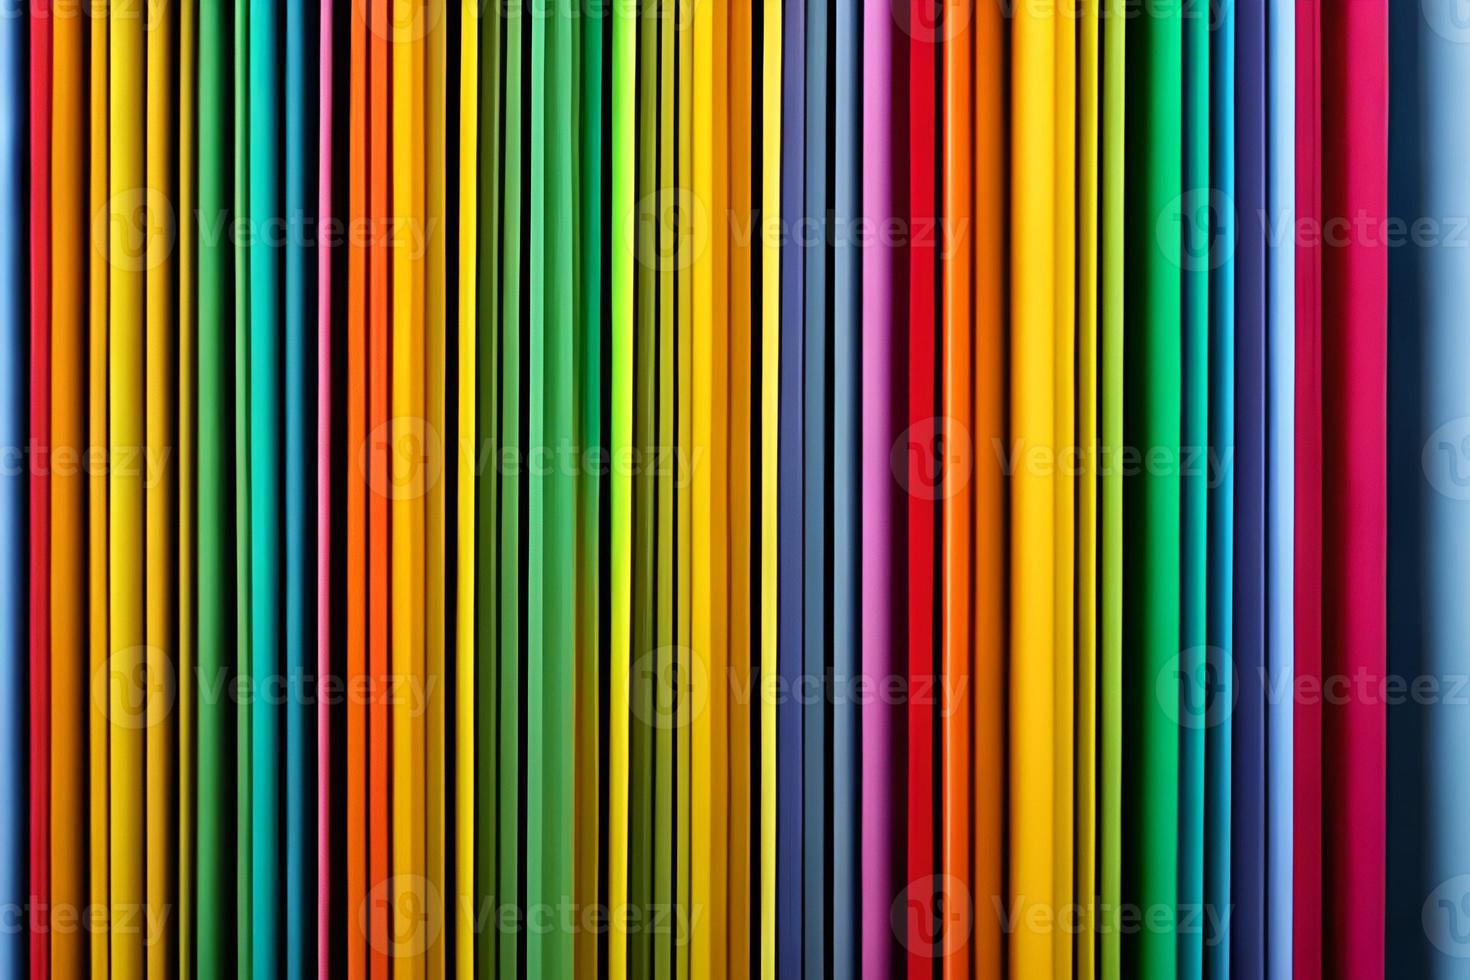 regenboog gekleurde papier besnoeiing regelen voor mooi achtergrond achtergrond. papier kunst regenboog papier vouwen en besnoeiing achtergrond met 3d effect, levendig kleuren, vector illustratie en ontwerp materiaal element. foto